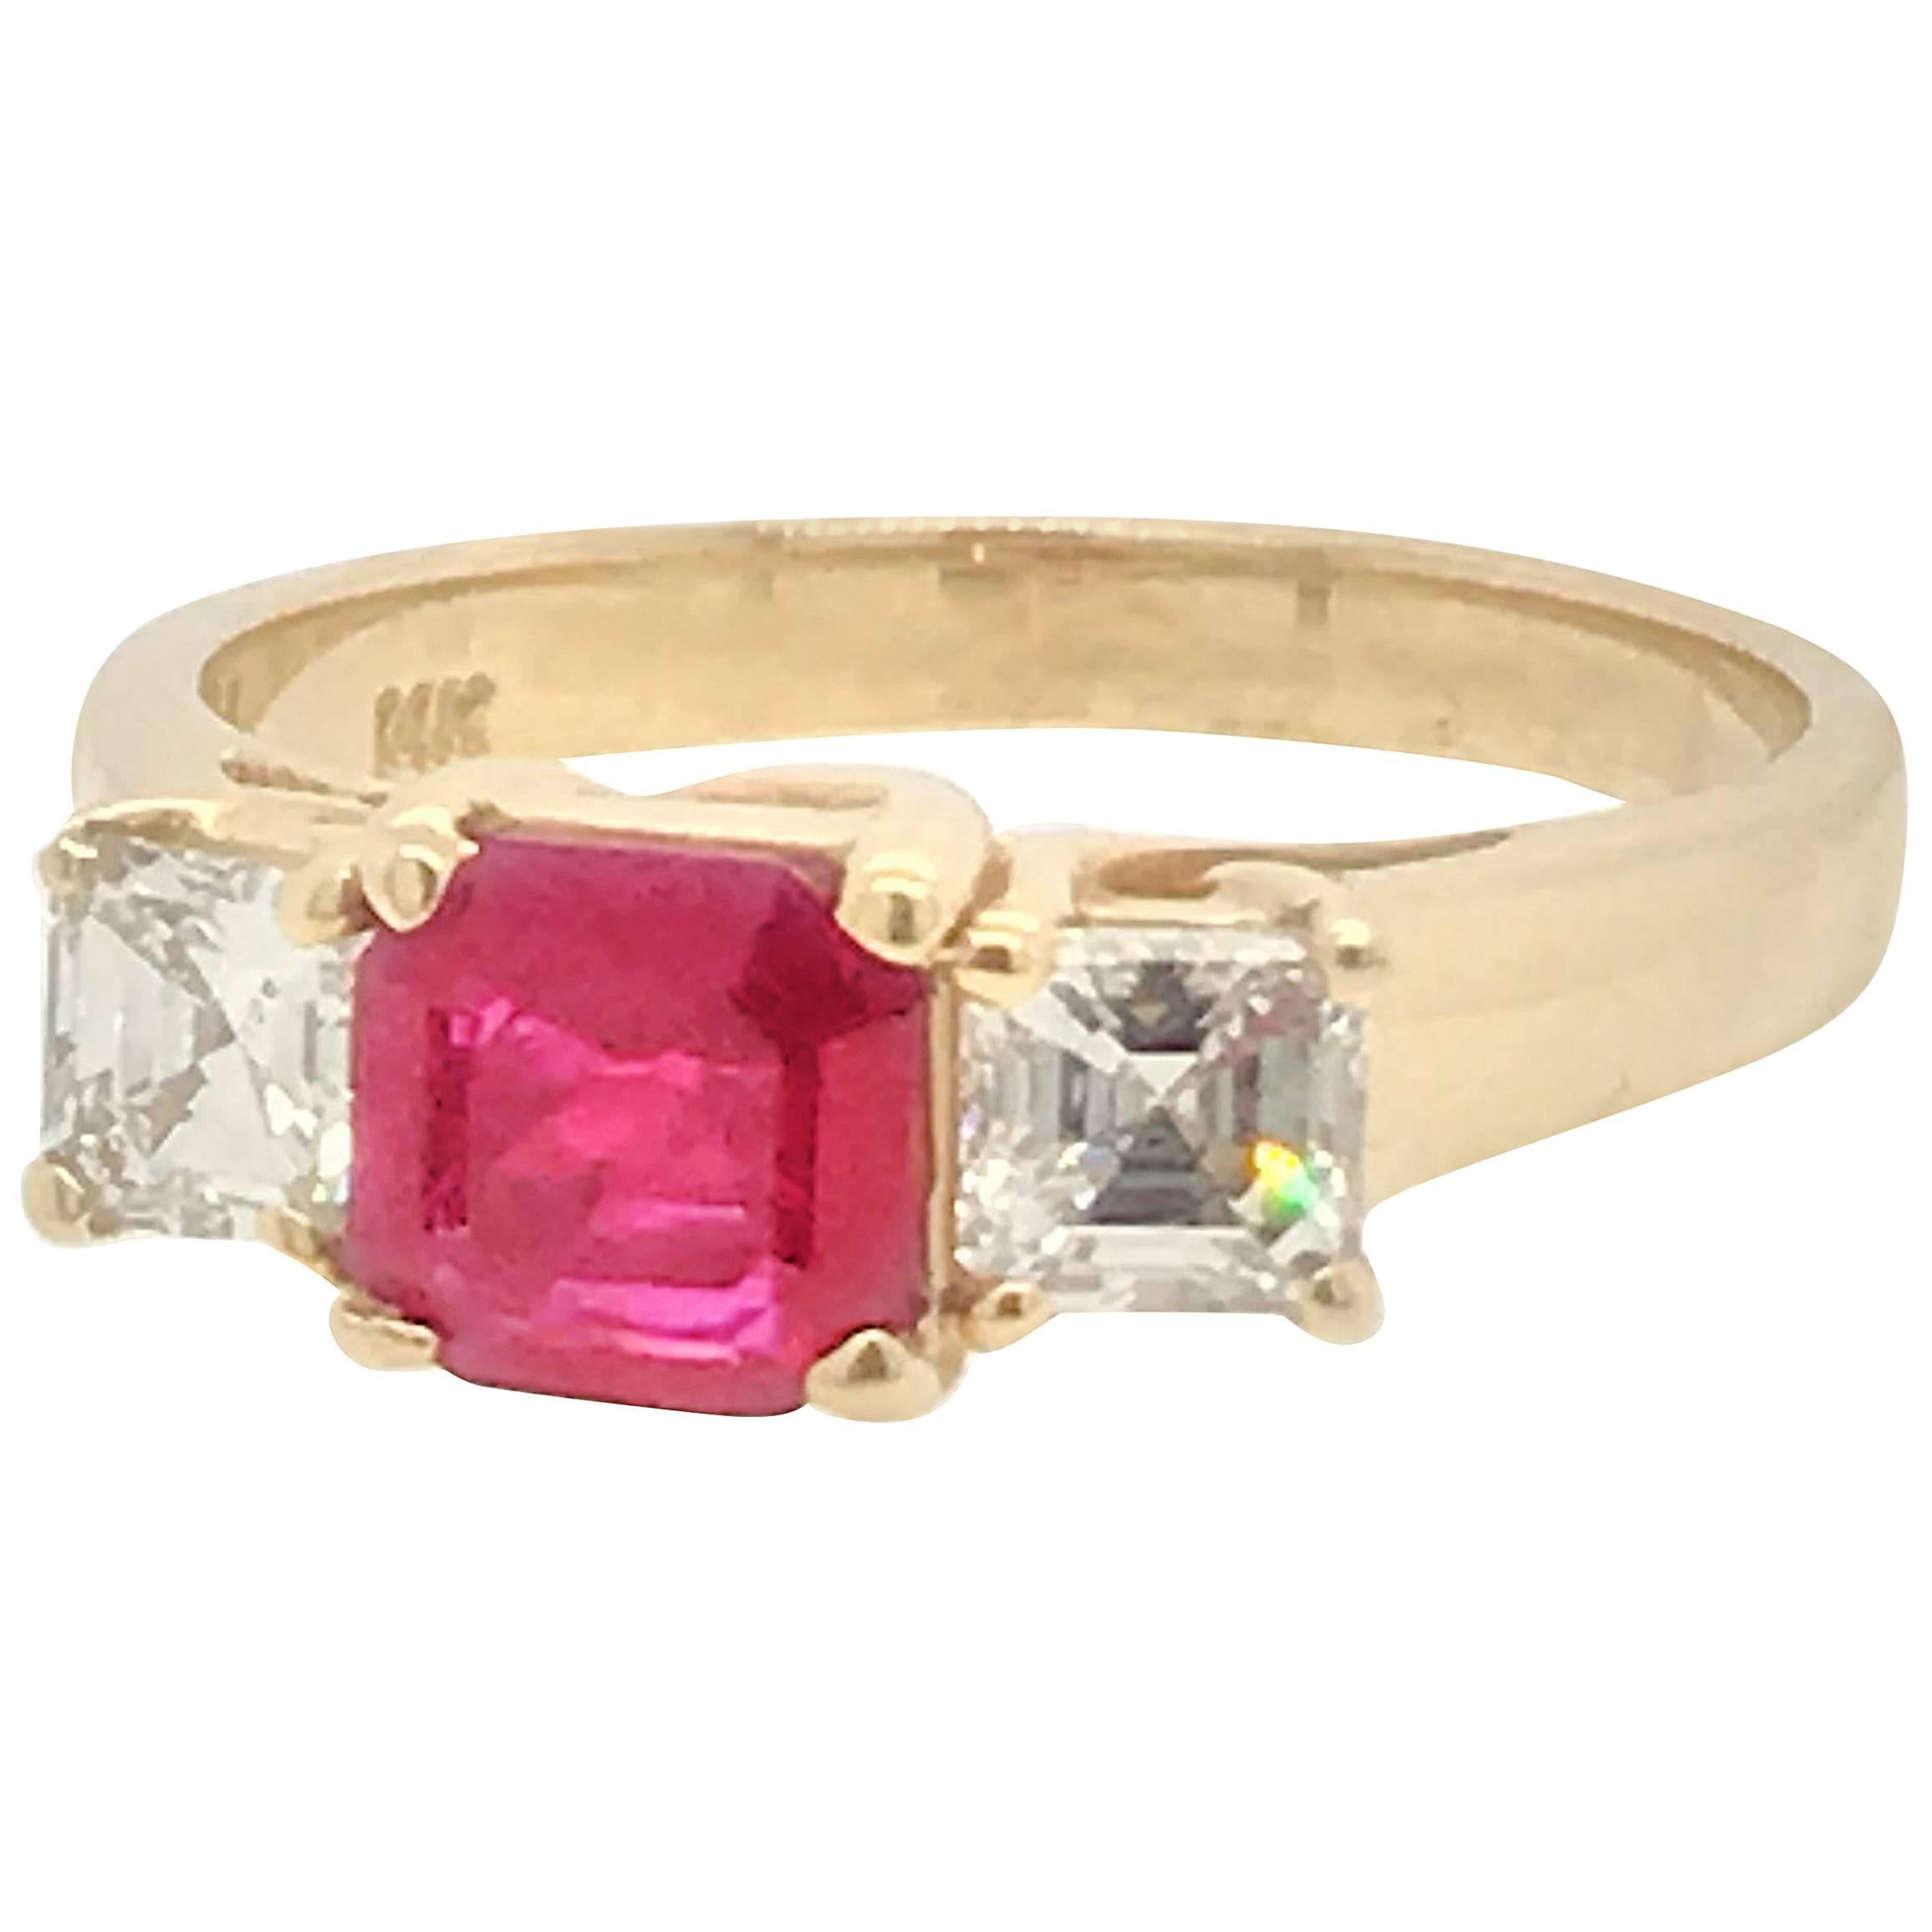 .85 Carat Ruby and Diamond Ring Set in 14 Karat Yellow Gold